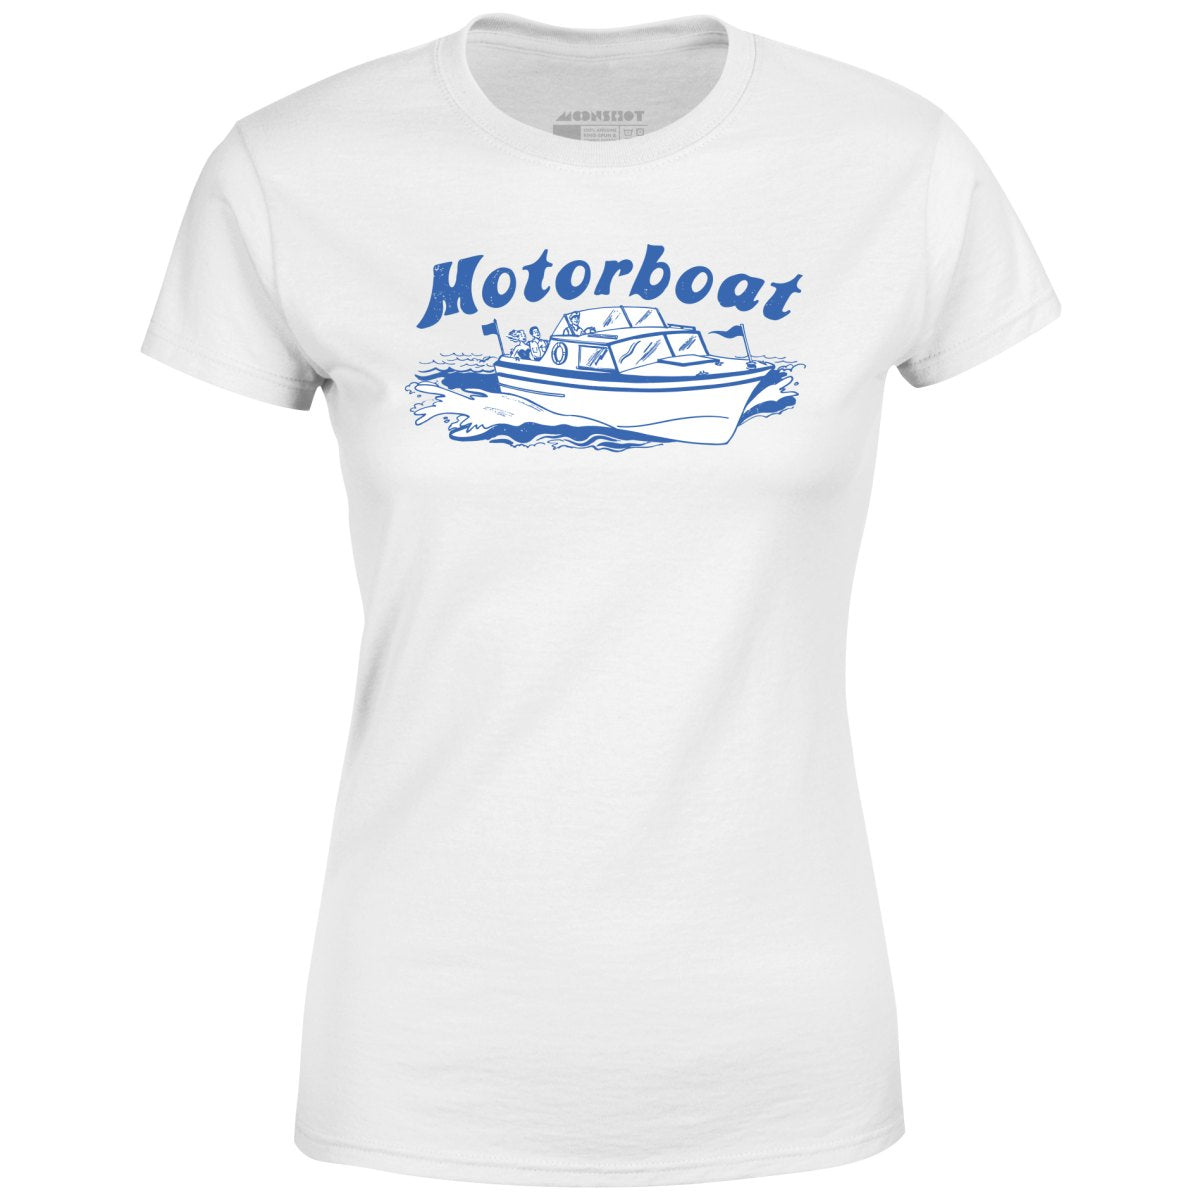 Motorboat - Women's T-Shirt